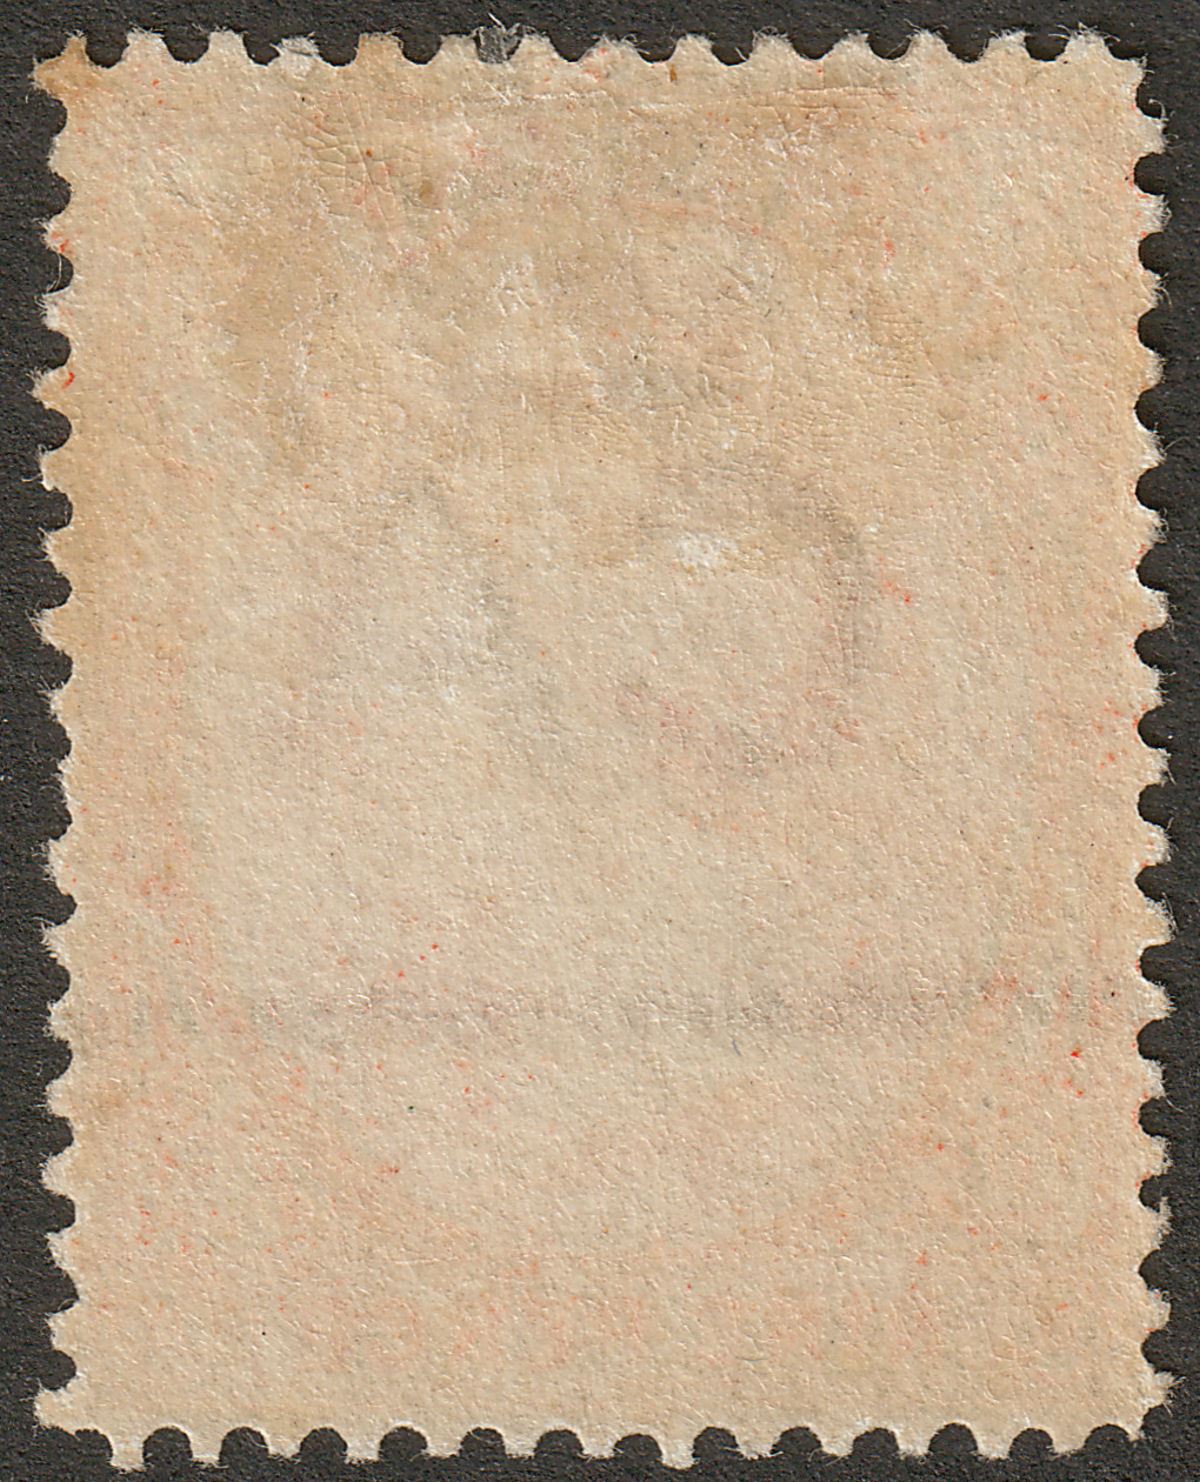 Falkland Islands 1895 QV 9d Pale Reddish Orange Mint SG35 cat £60